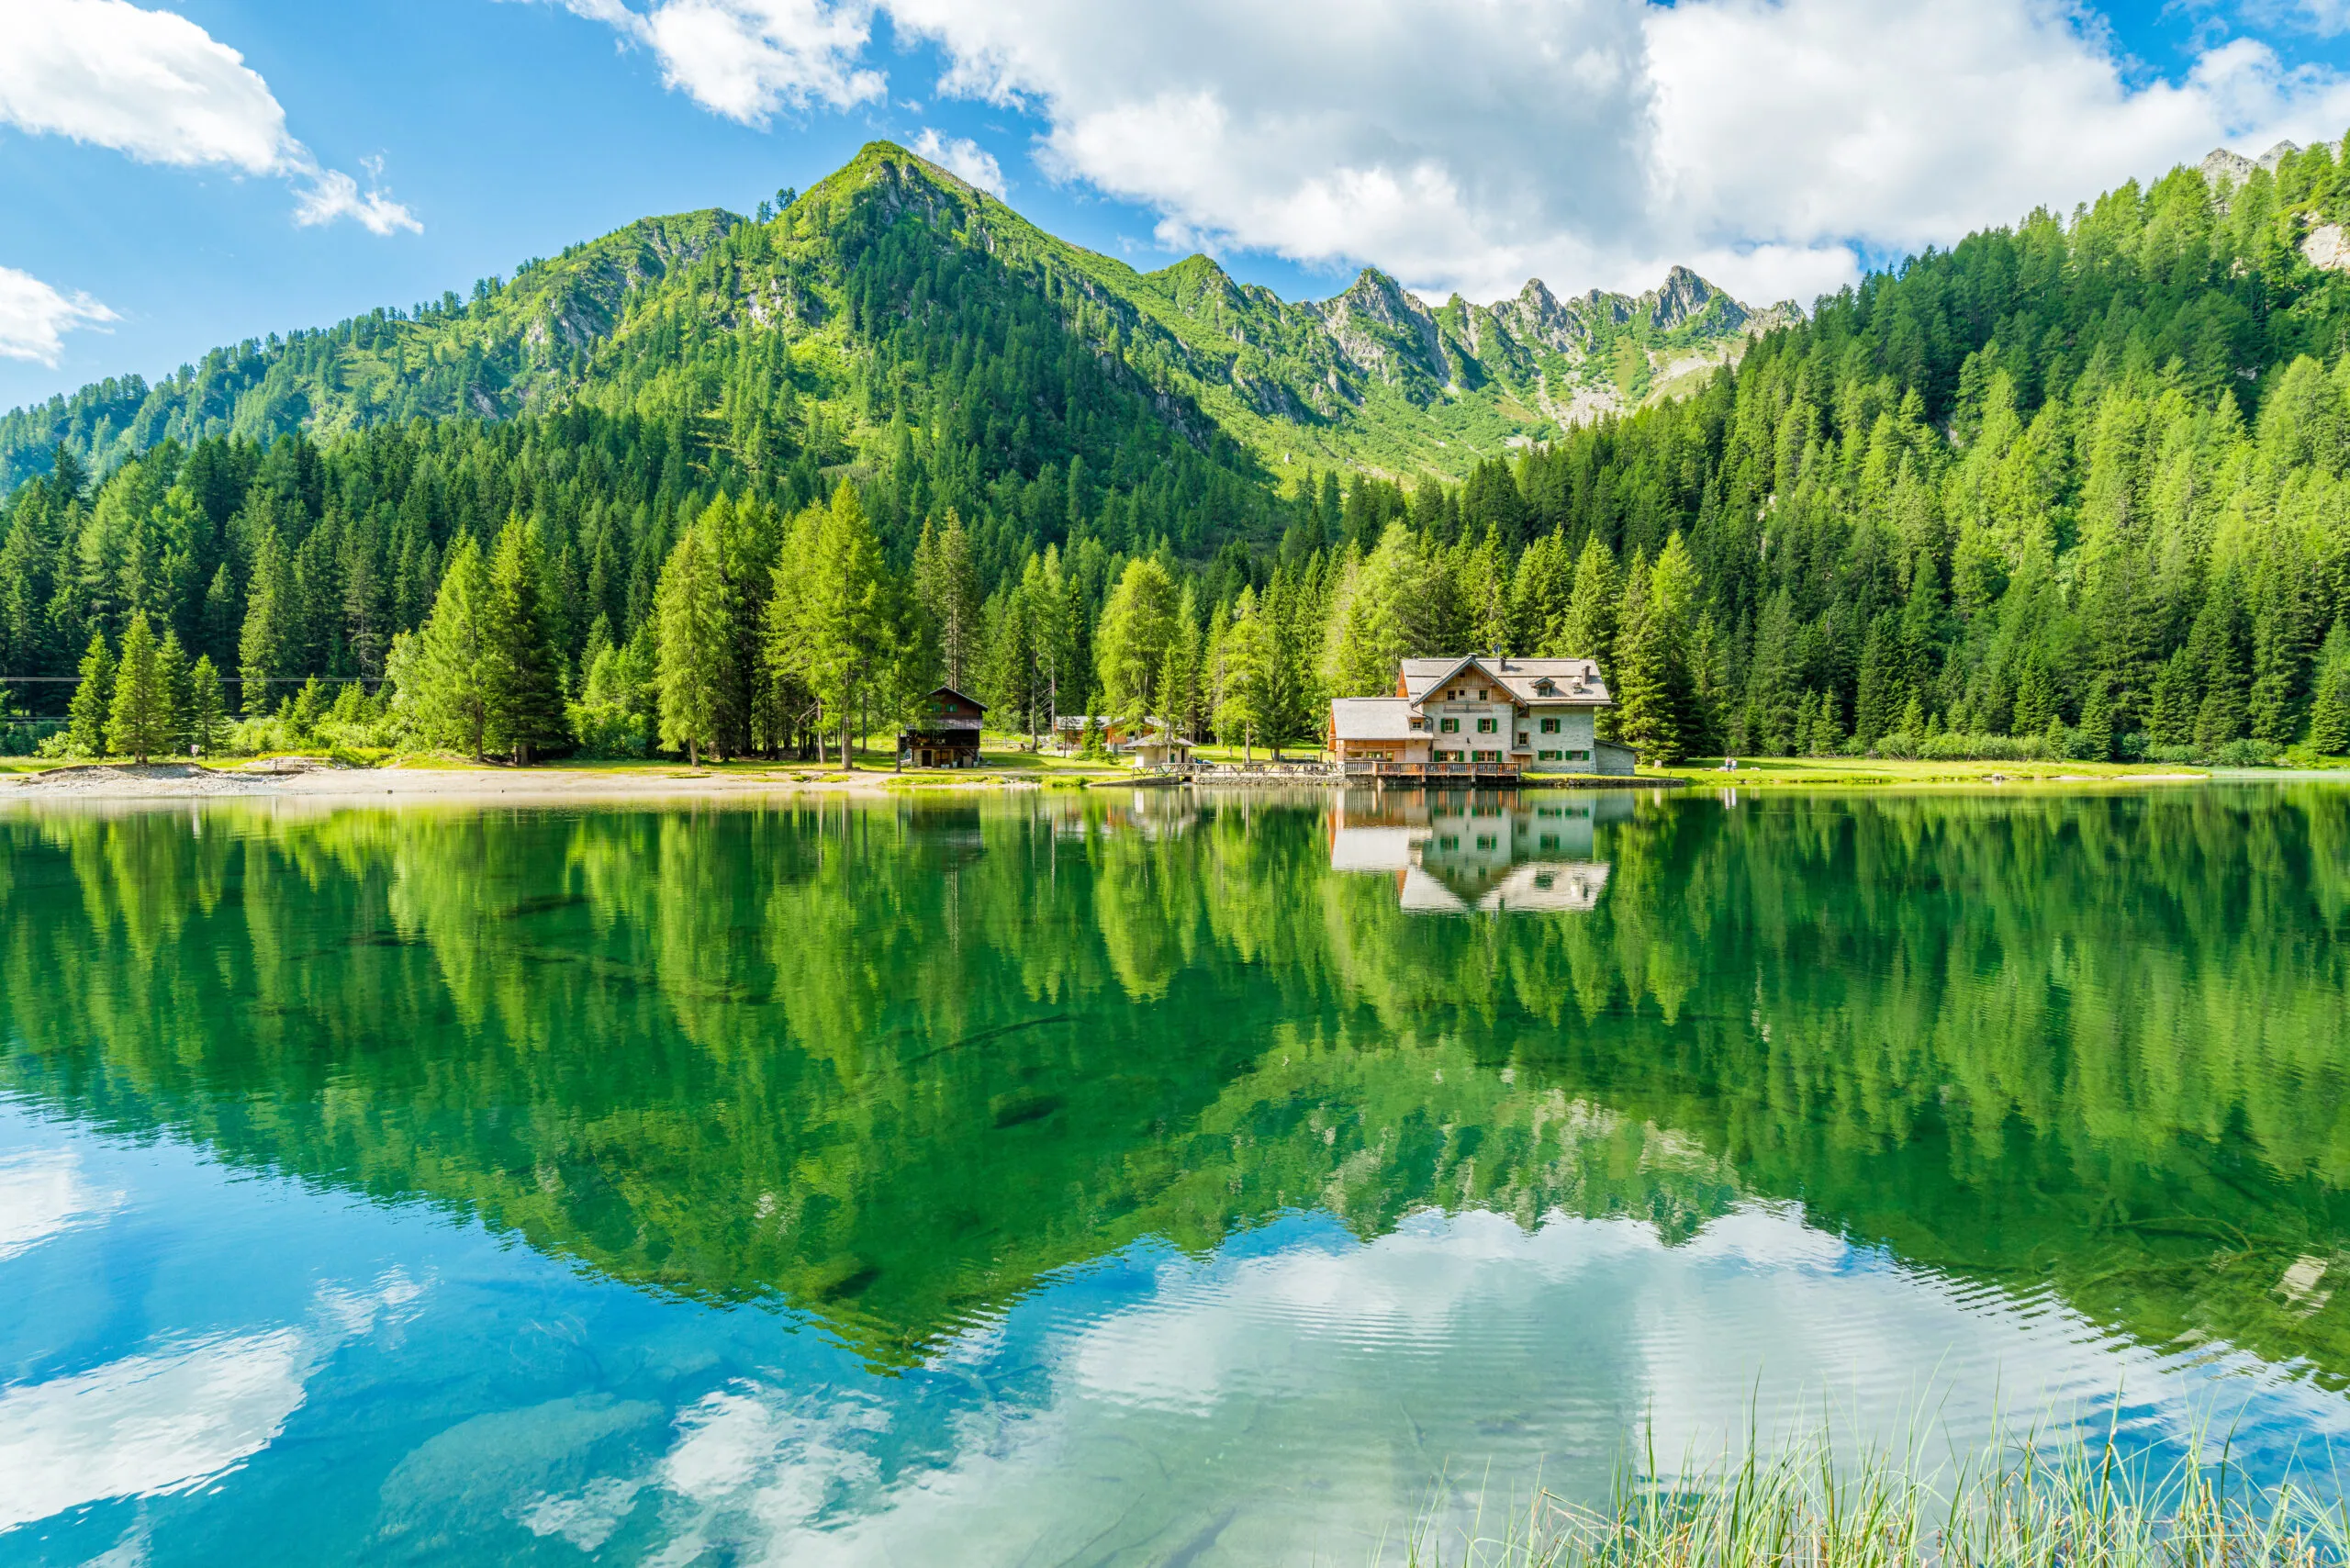 Paesaggio idilliaco al Lago Nambino, vicino a Madonna di Campiglio. Provincia di Trento, Trentino Alto Adige, Italia settentrionale.